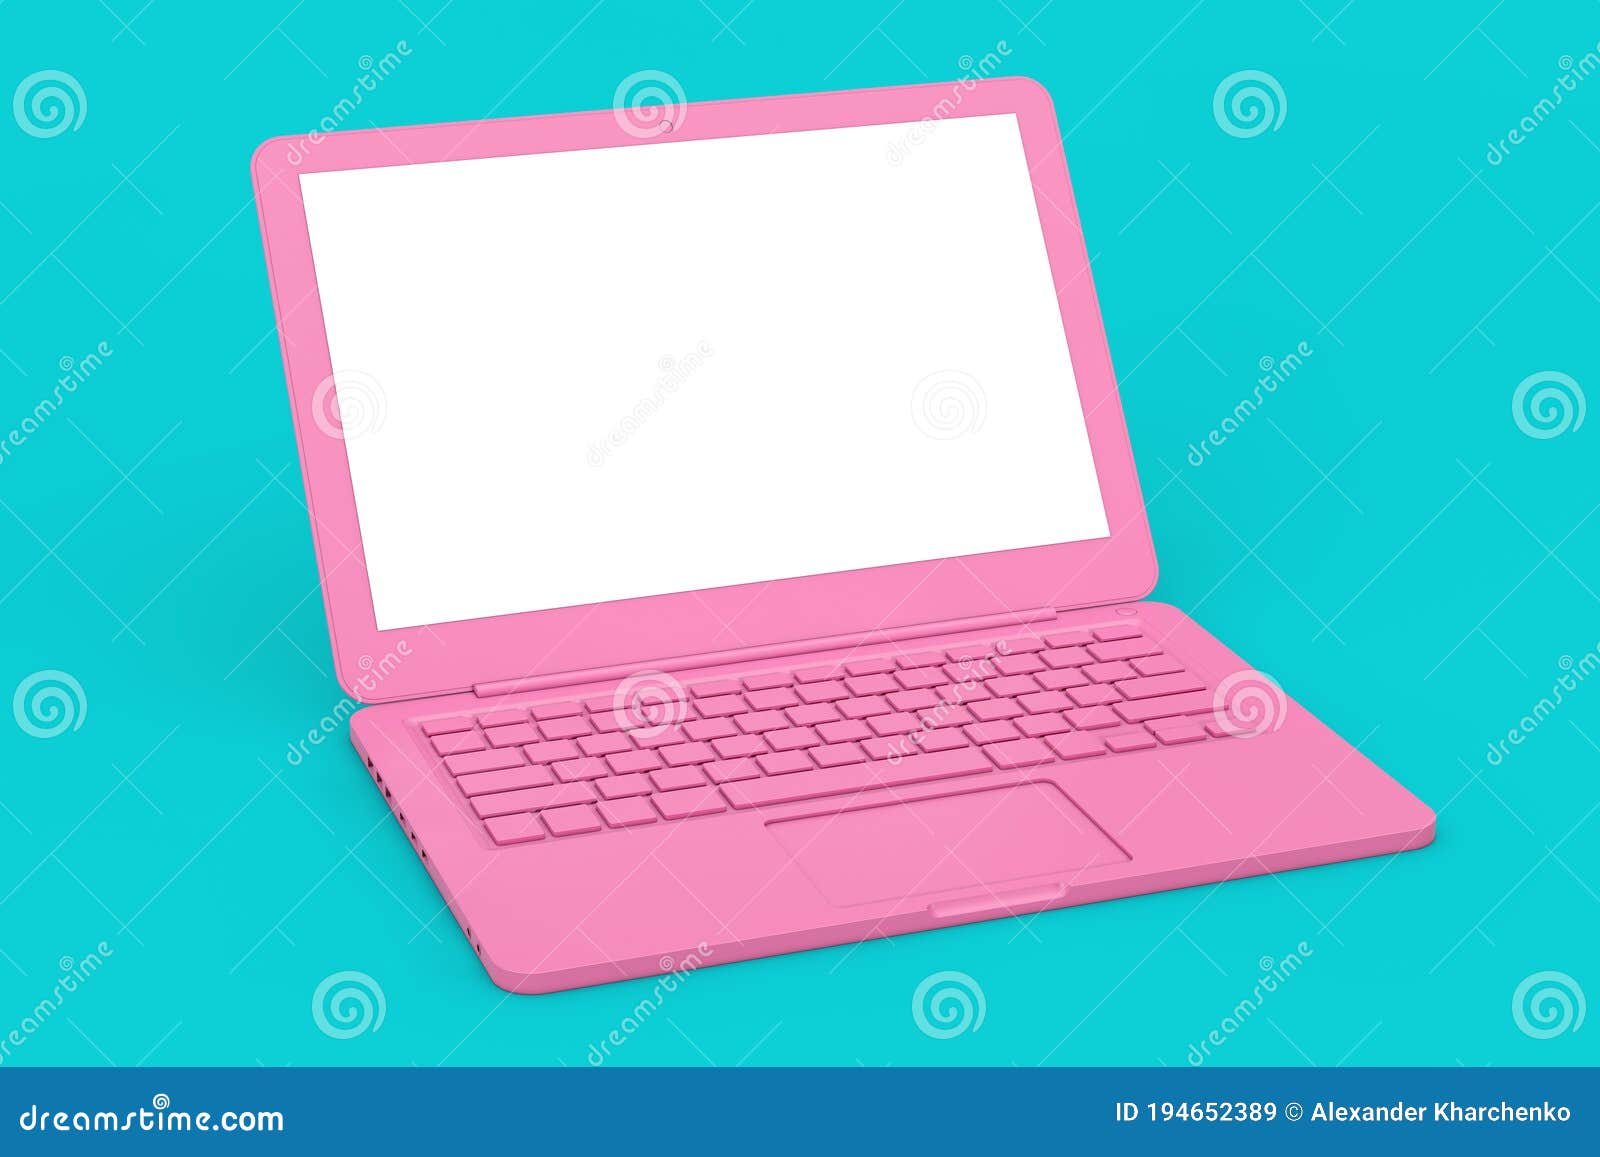 Khám phá ngay chiếc máy tính xách tay màu hồng xinh xắn trông rất duyên dáng và cá tính. Với thiết kế nhỏ gọn, bạn dễ dàng mang theo bất cứ nơi đâu để làm việc, học tập hay giải trí. Hãy nhấp vào hình ảnh để khám phá thêm những tính năng ấn tượng của chiếc máy tính này.